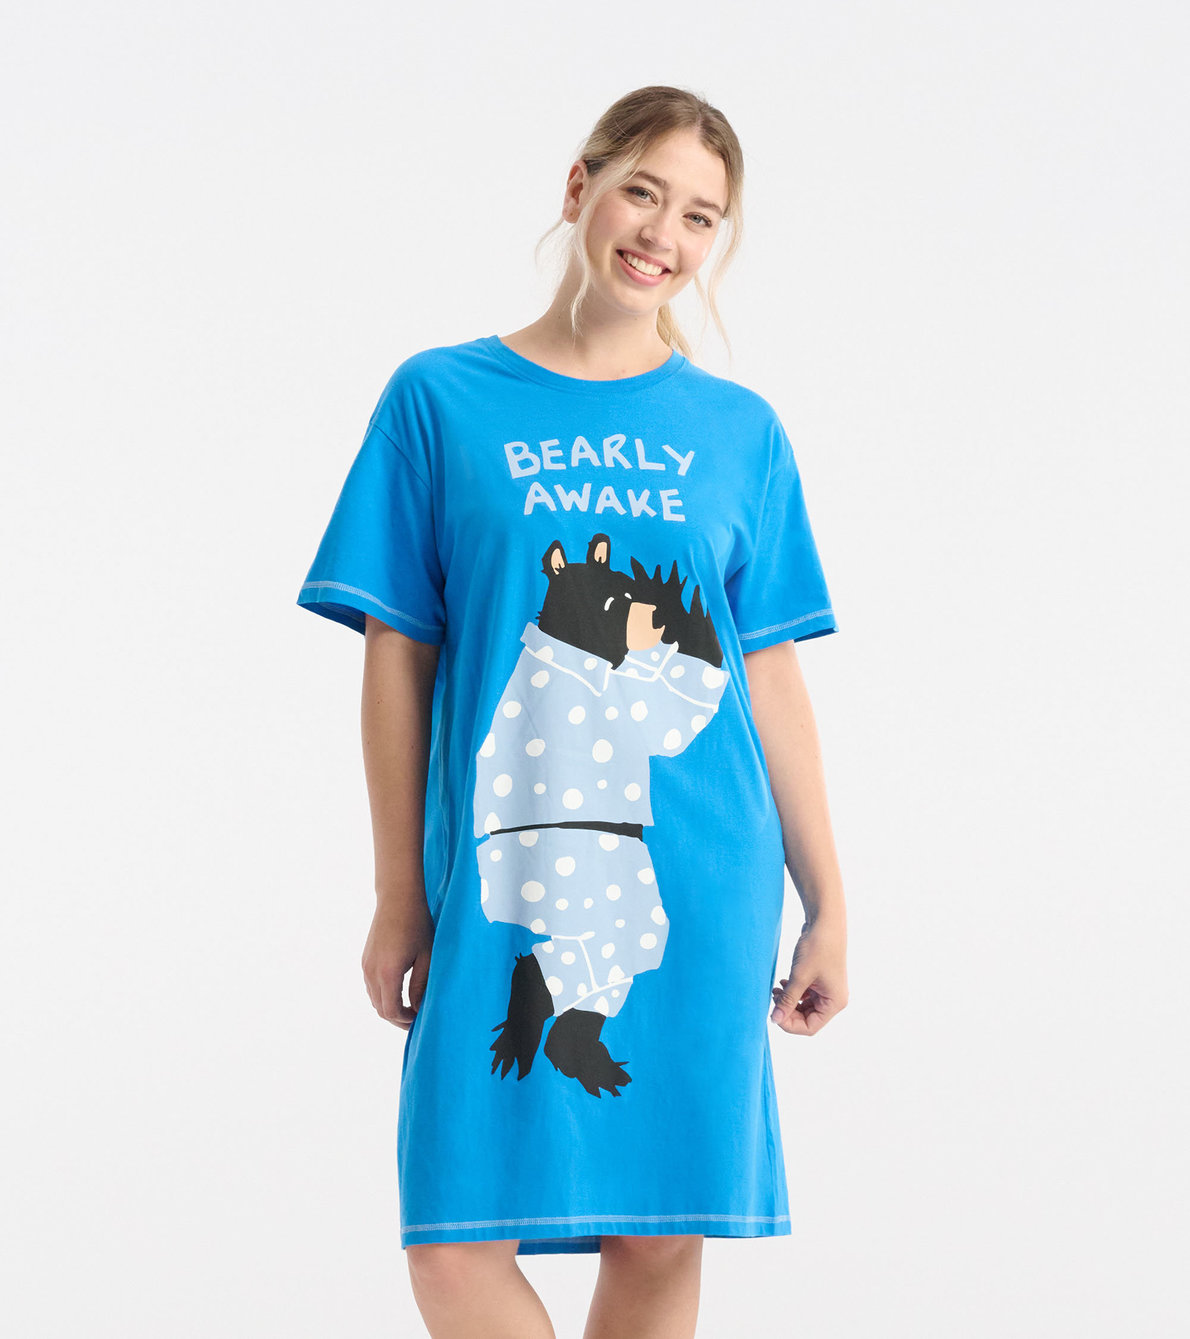 View larger image of Bearly Awake Women's Sleepshirt